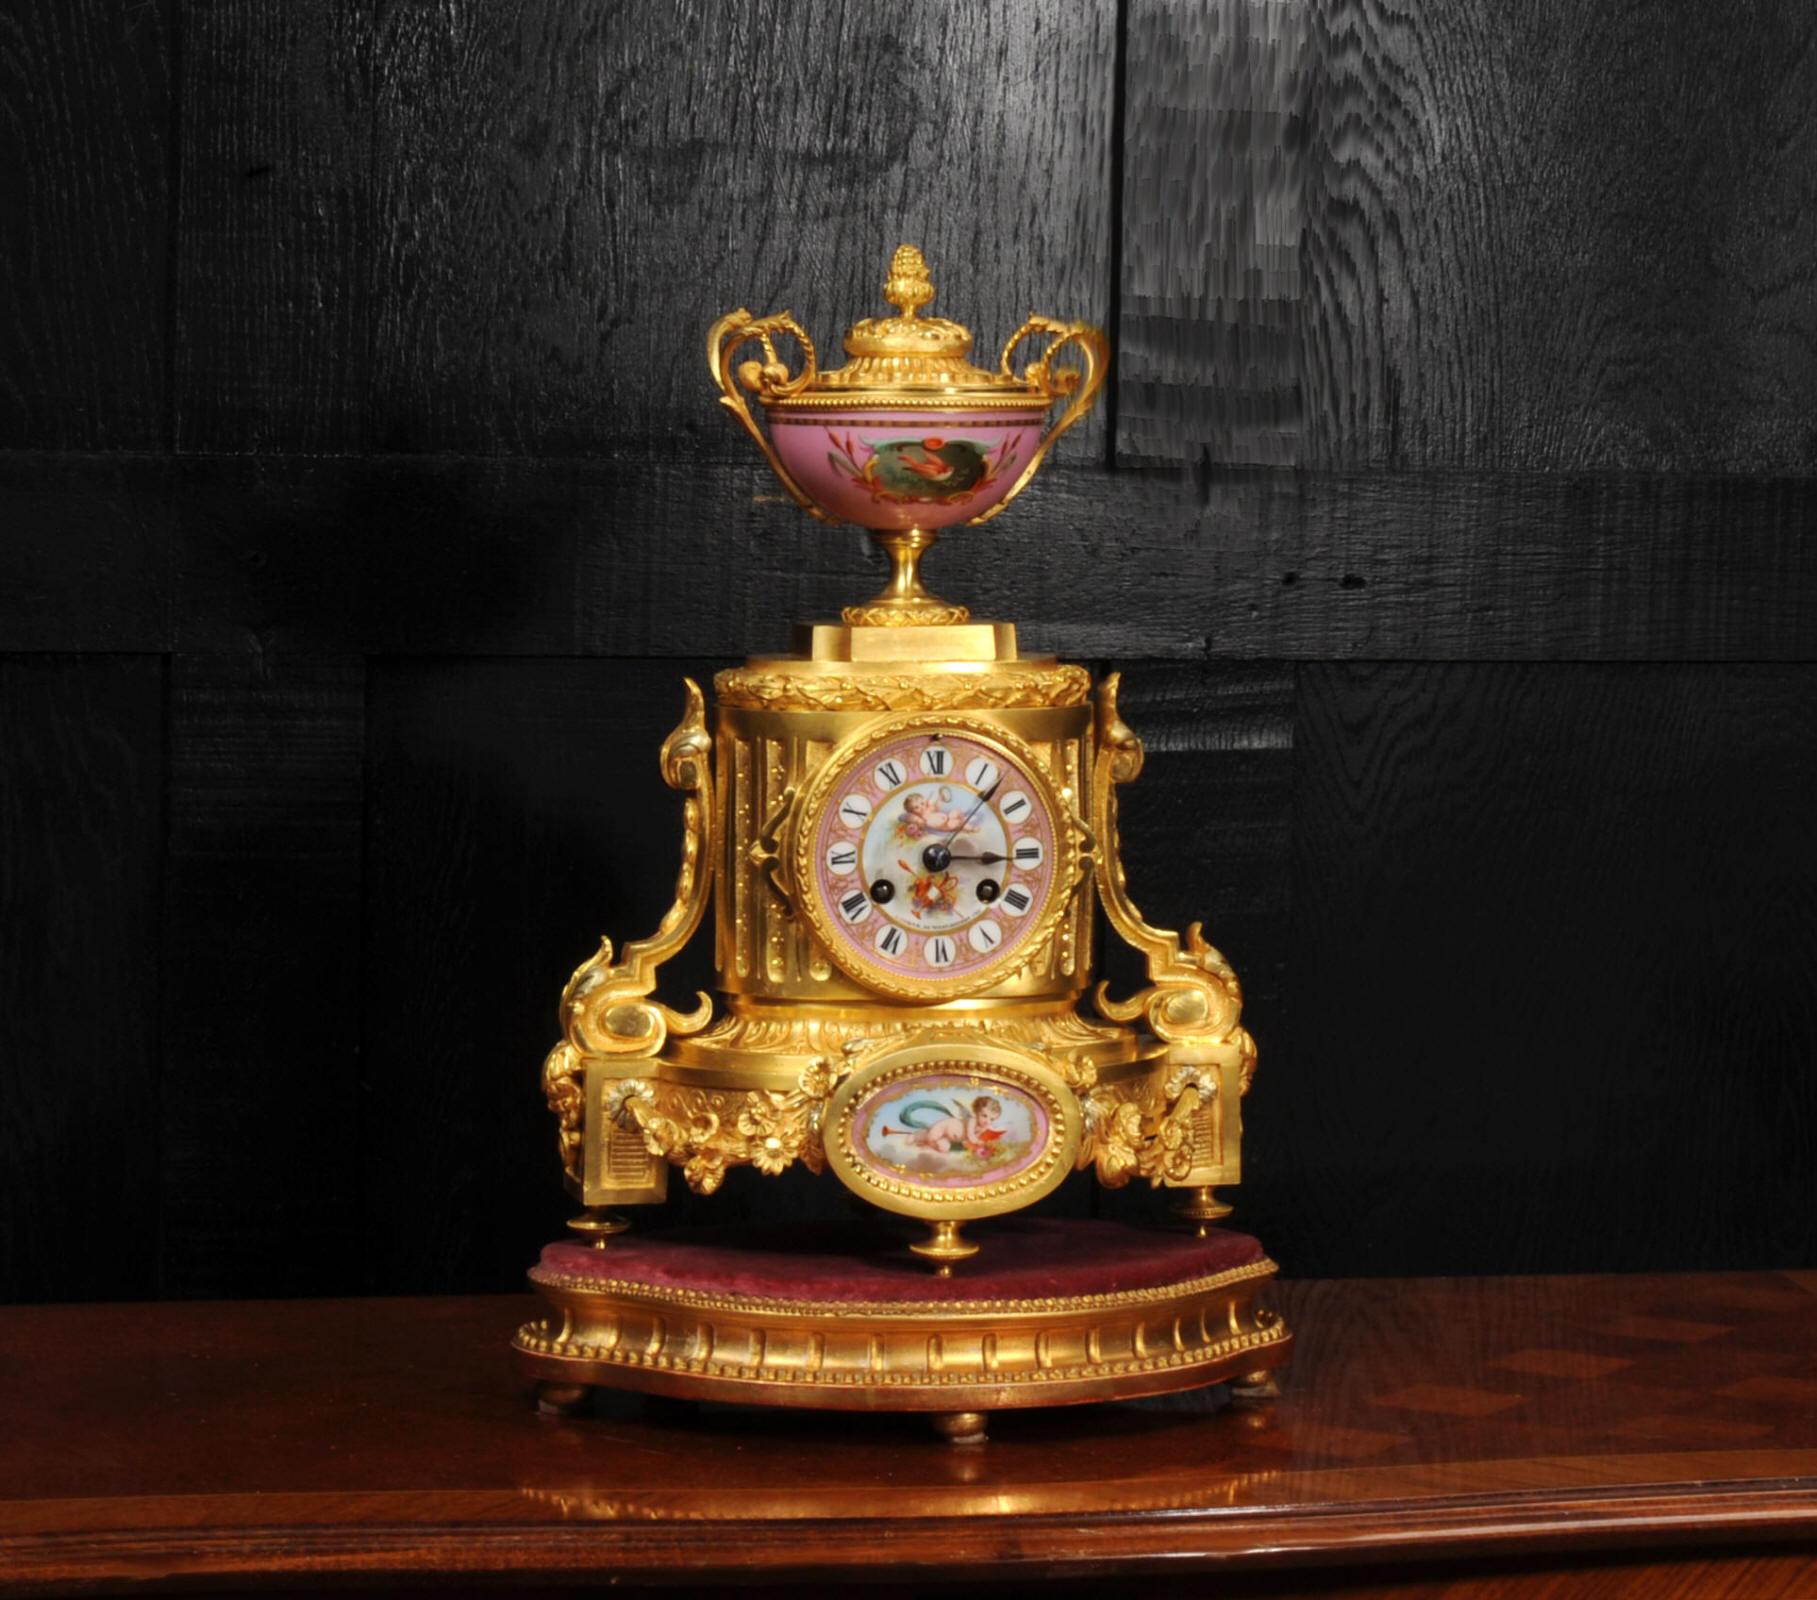 Une étonnante horloge française ancienne et originale du célèbre fabricant Achille Brocot. Il présente une porcelaine exquise de style Sèvres avec un fond rose pompadour. Magnifiquement modelé dans le style classique de Louis XVI avec des consoles à